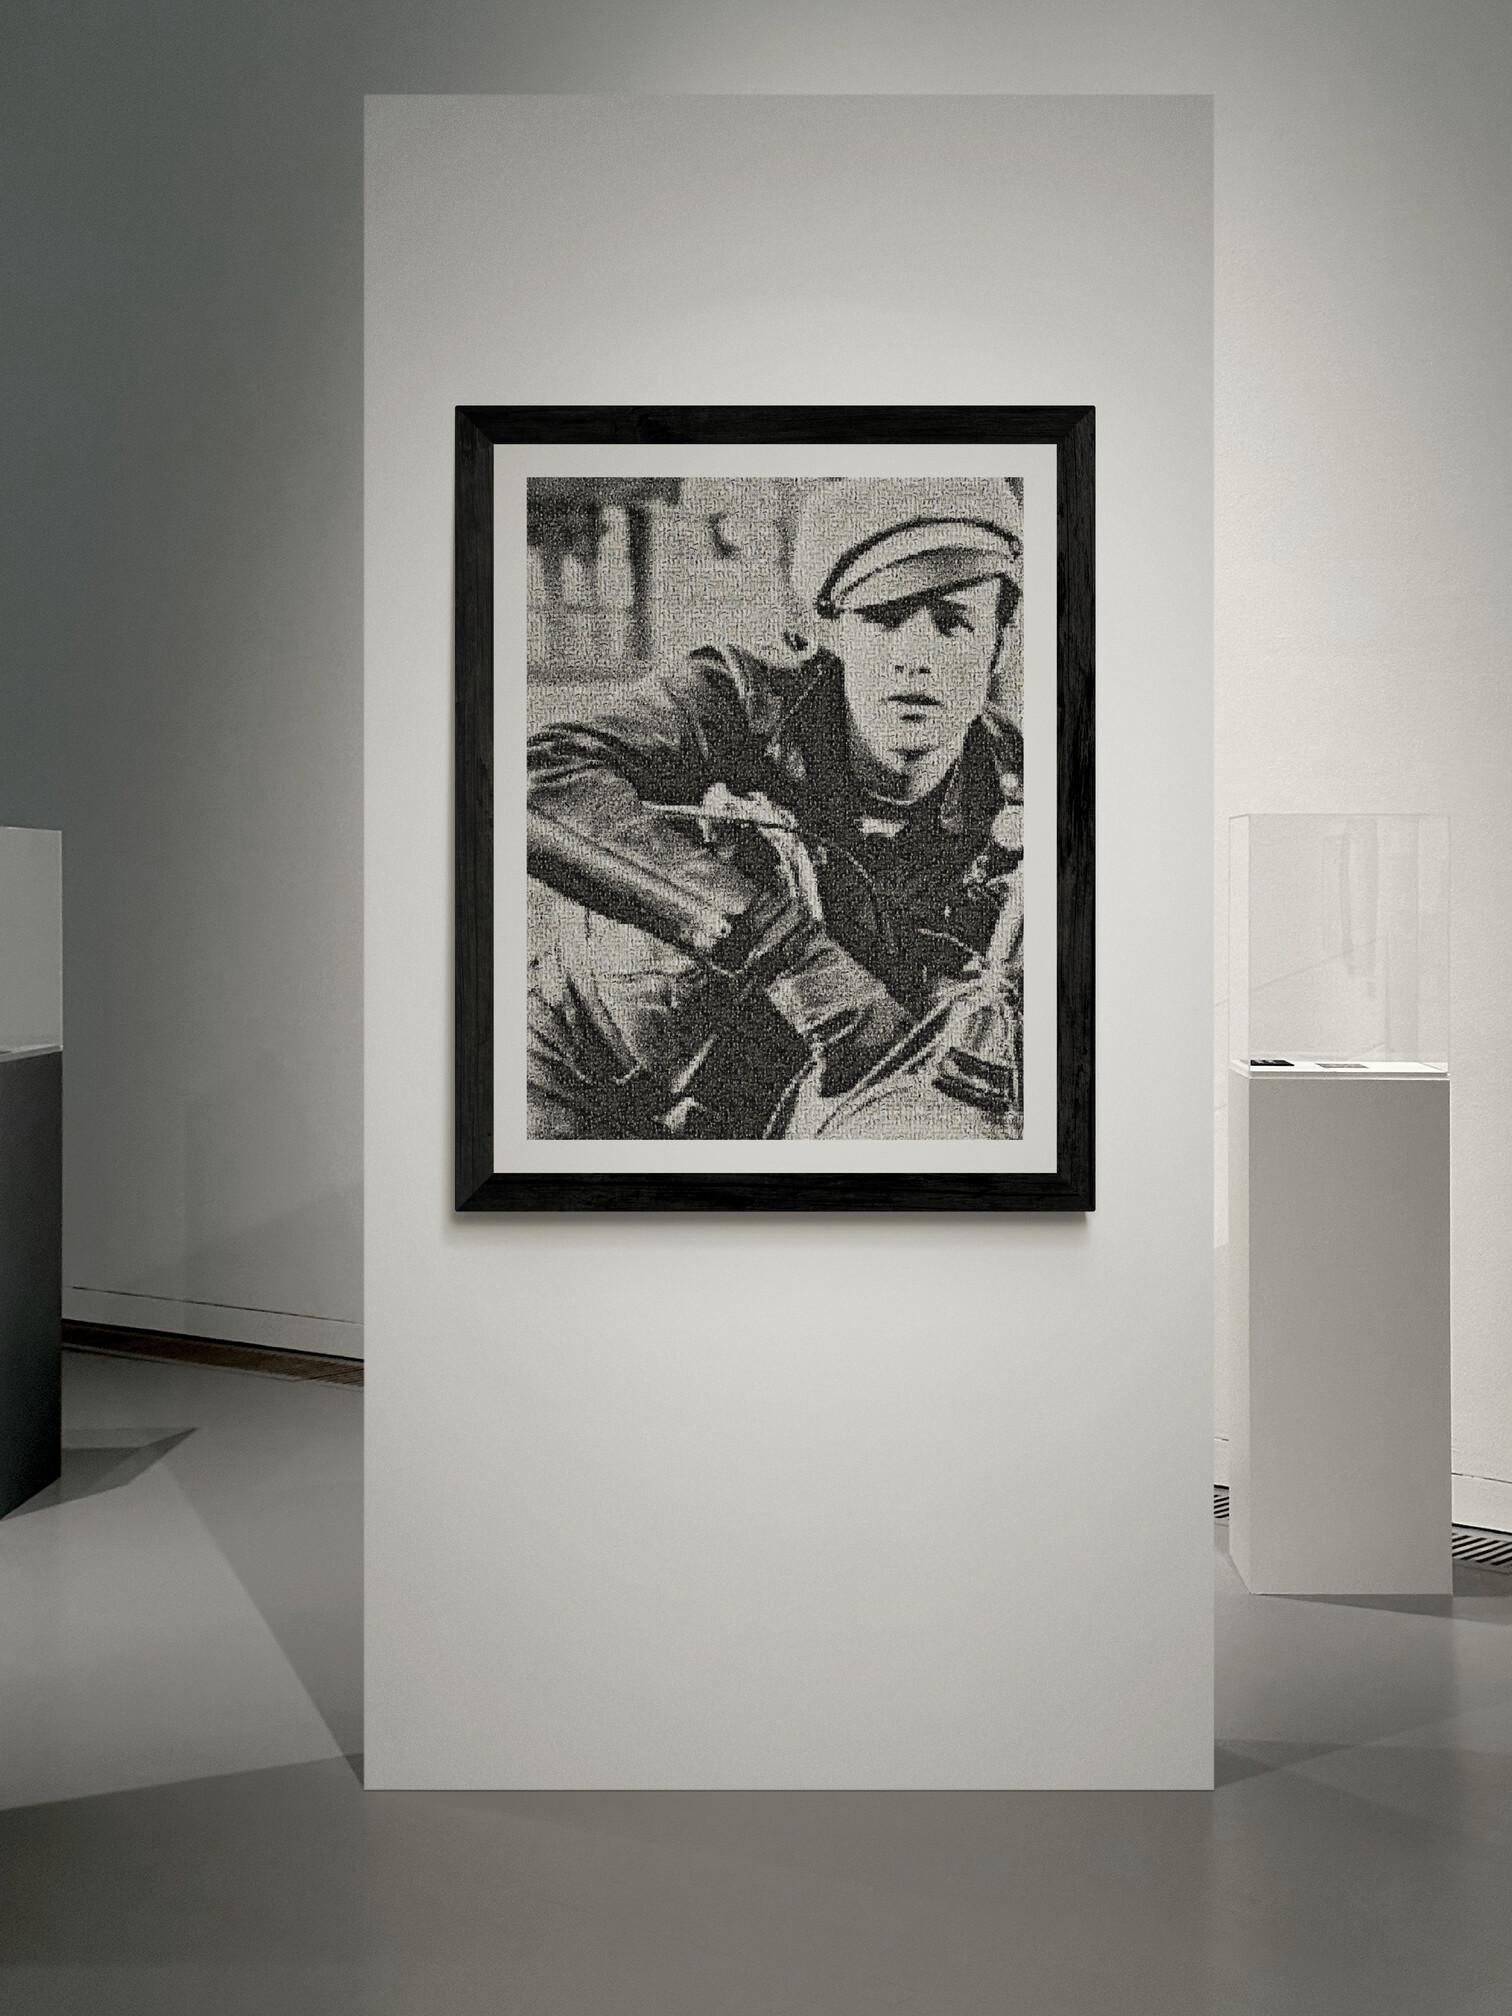 64x48 „ Marlon Brando von Warhol“ Fotomosaik Pop Fine Art Fotografie, signiert  – Photograph von Destro